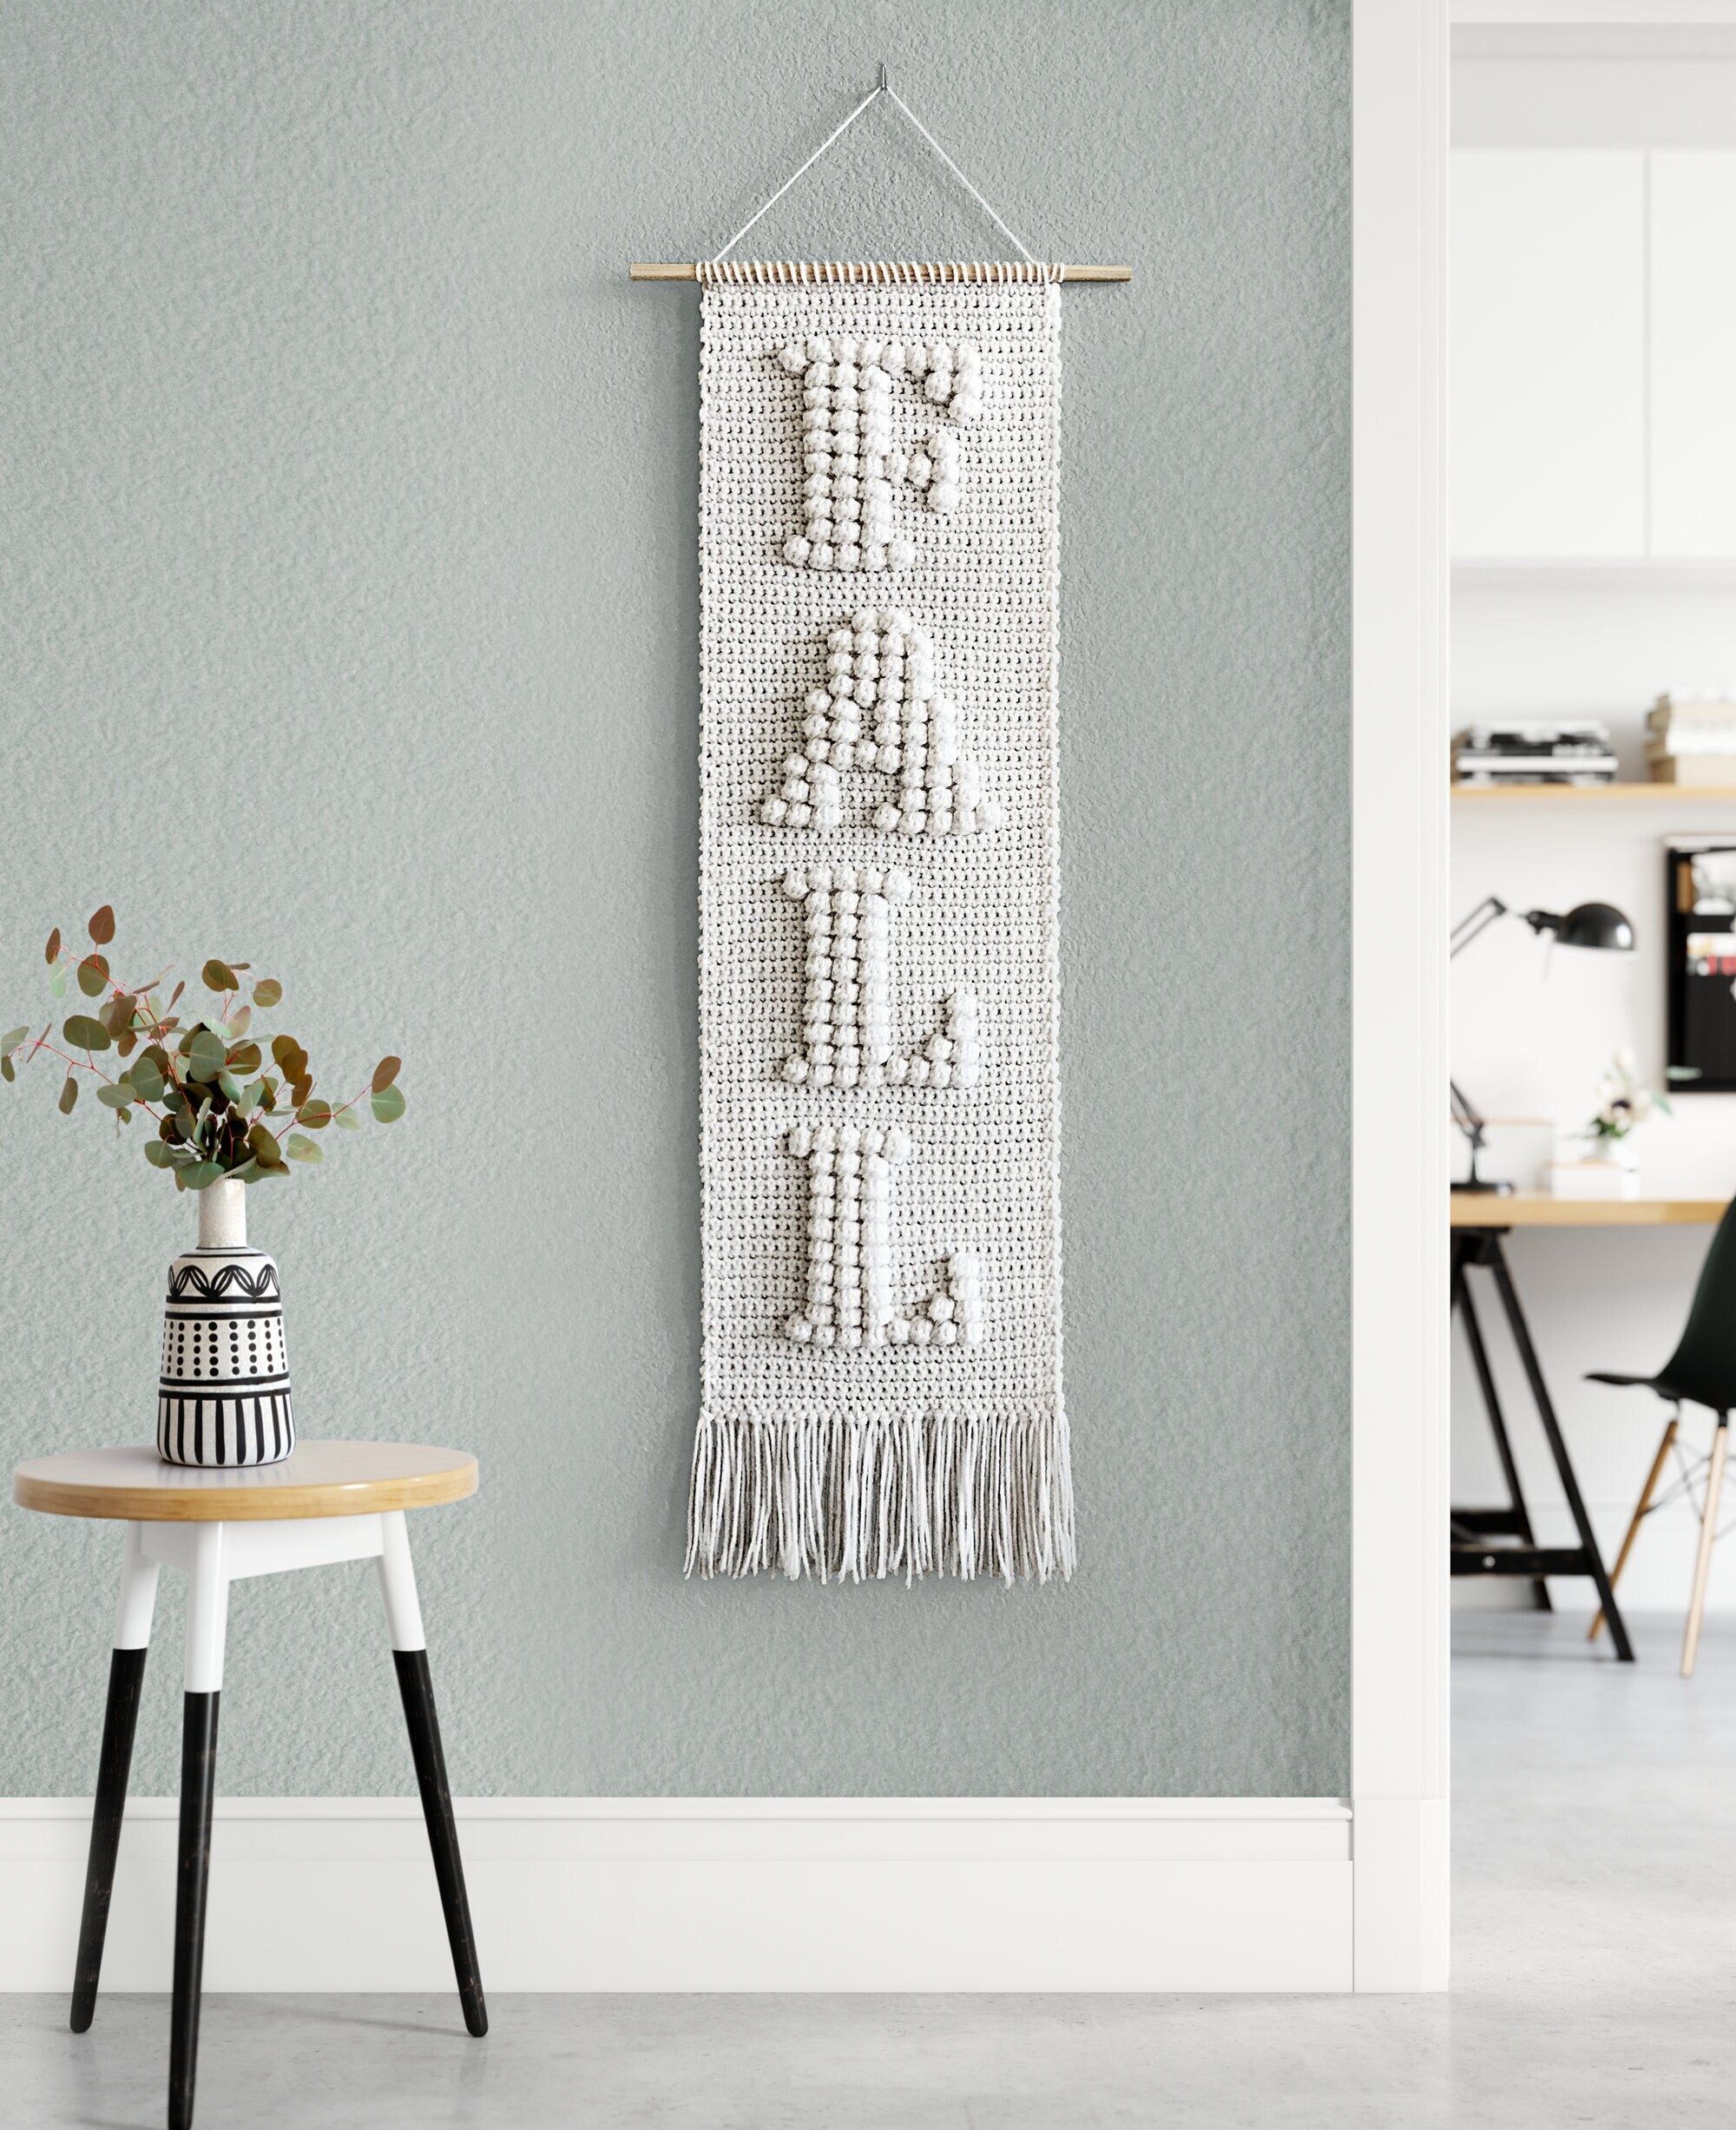 Crochet Fall Wall Hanging Pattern • Bobble Letters Monogram Wall Hanging • Wall Hanging Croch... | Etsy (US)